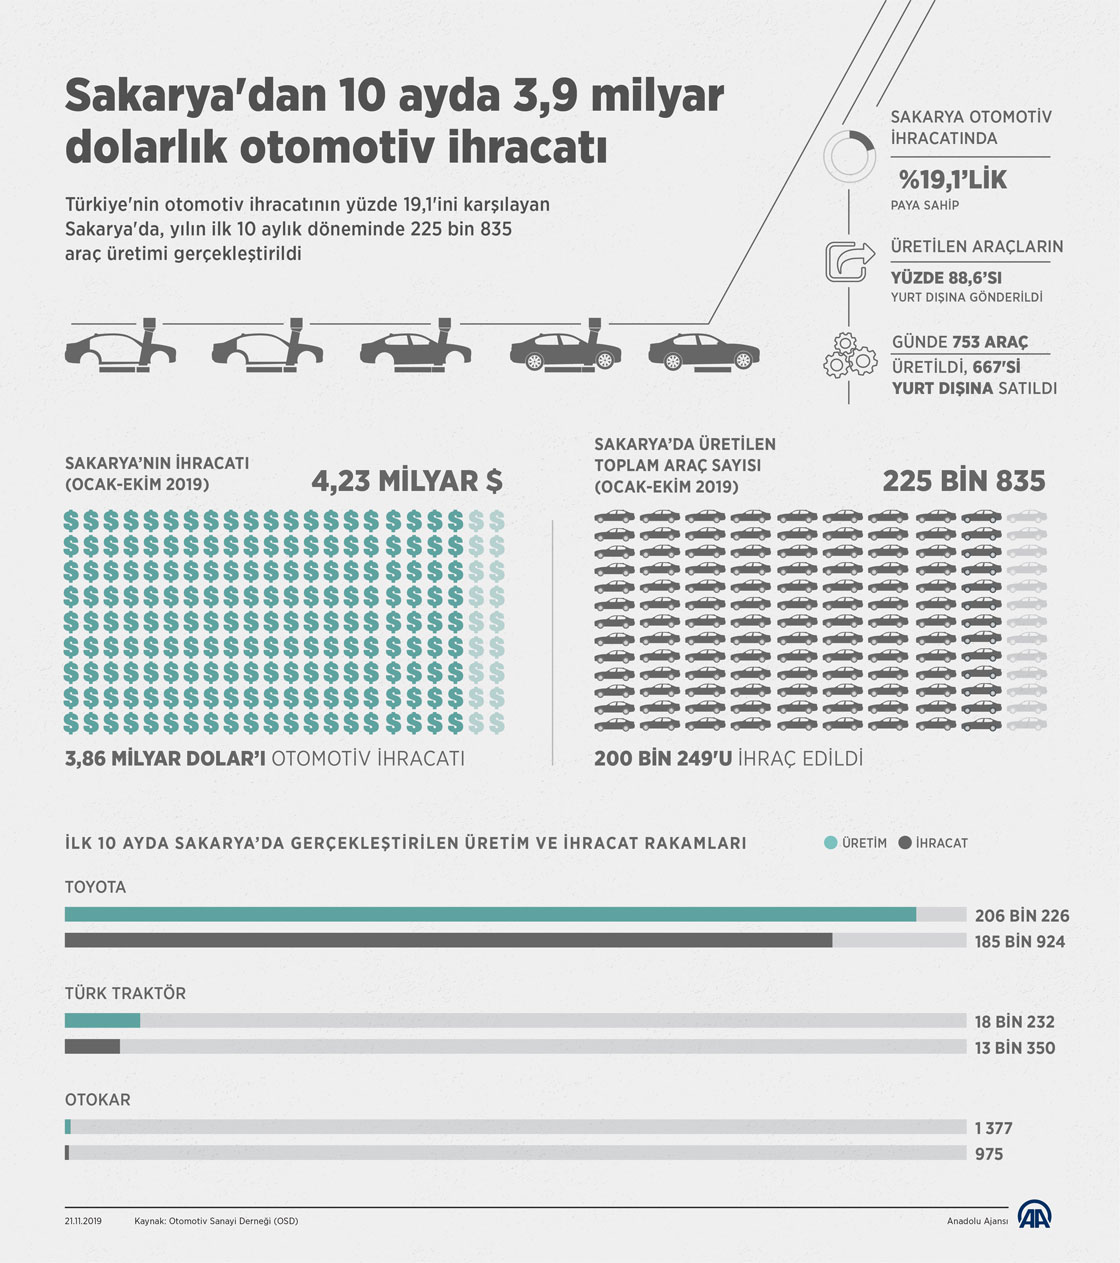 Sakarya'dan 10 ayda 3,9 milyar dolarlık otomotiv ihracatı